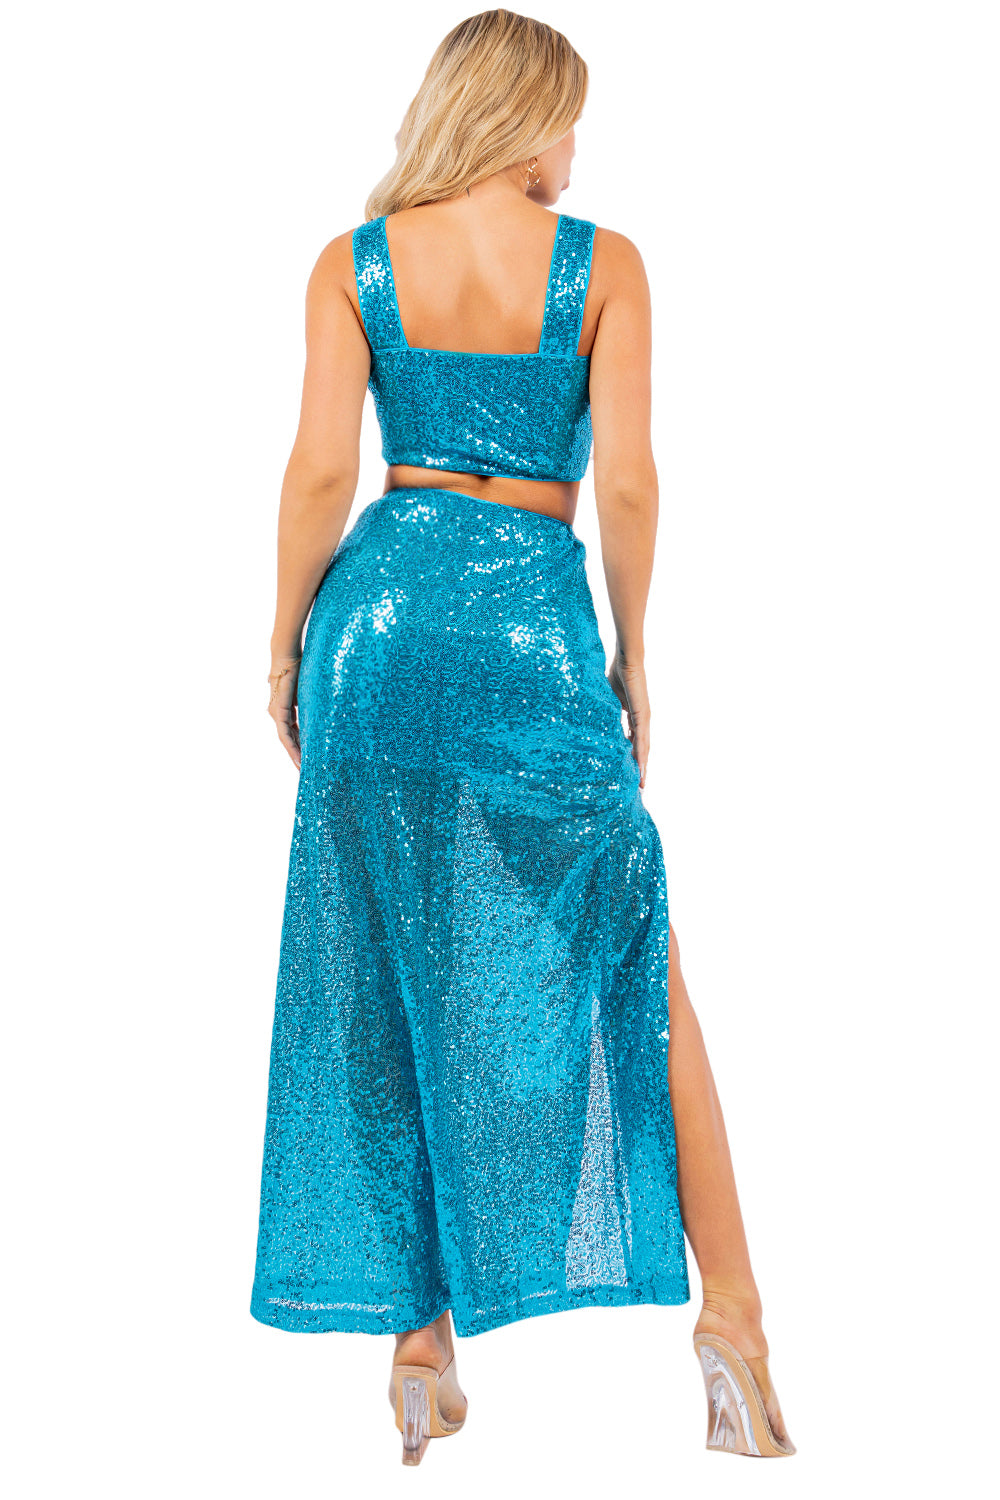 PE-3795 Elegant Sequined Evening Skirt Set with Side Slit